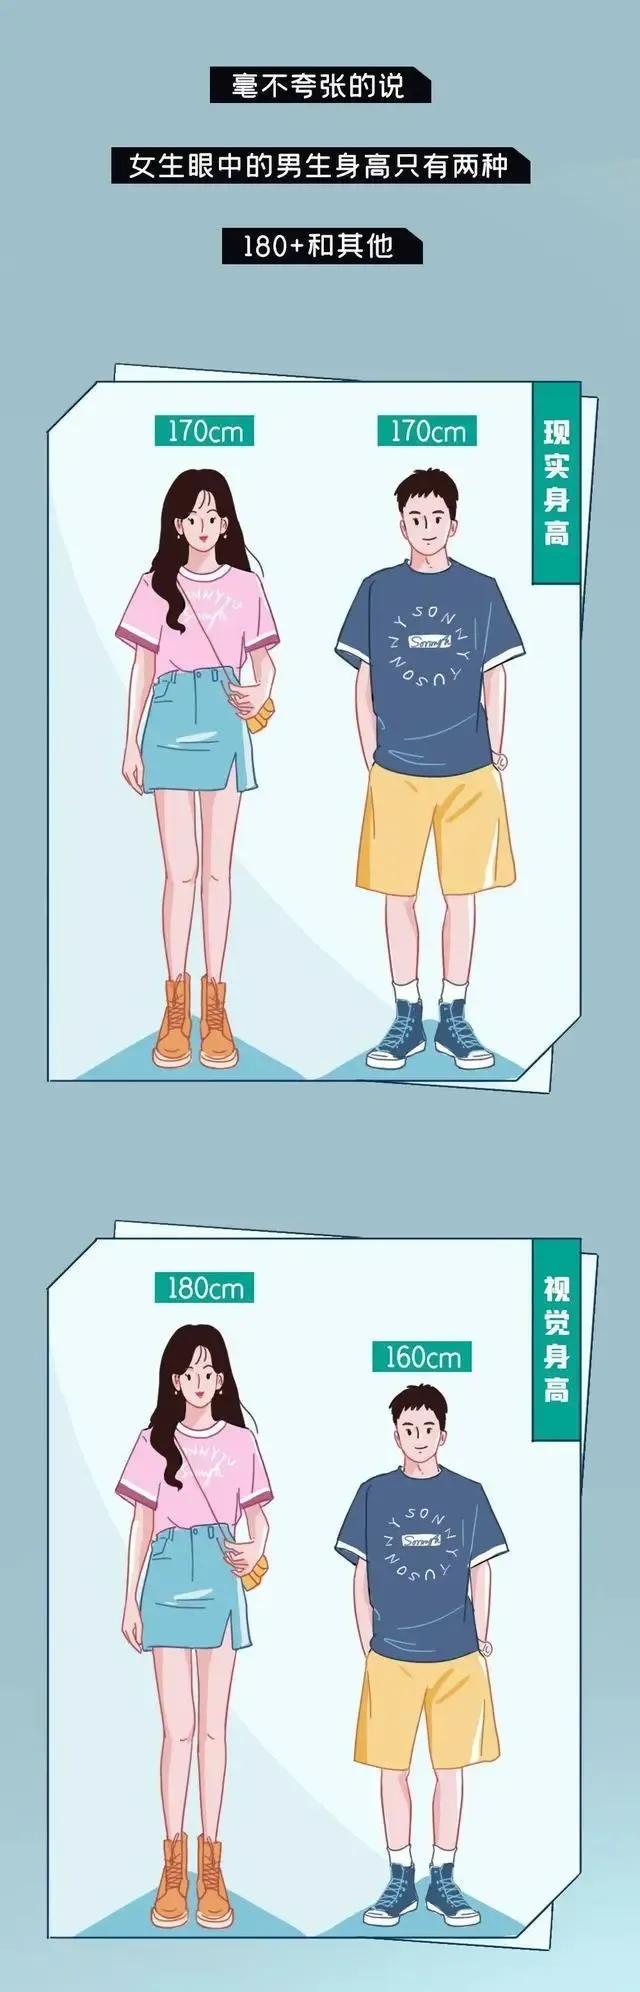 漫画揭秘:170cm的女生和170cm男生,或不一样高?扎心了老铁